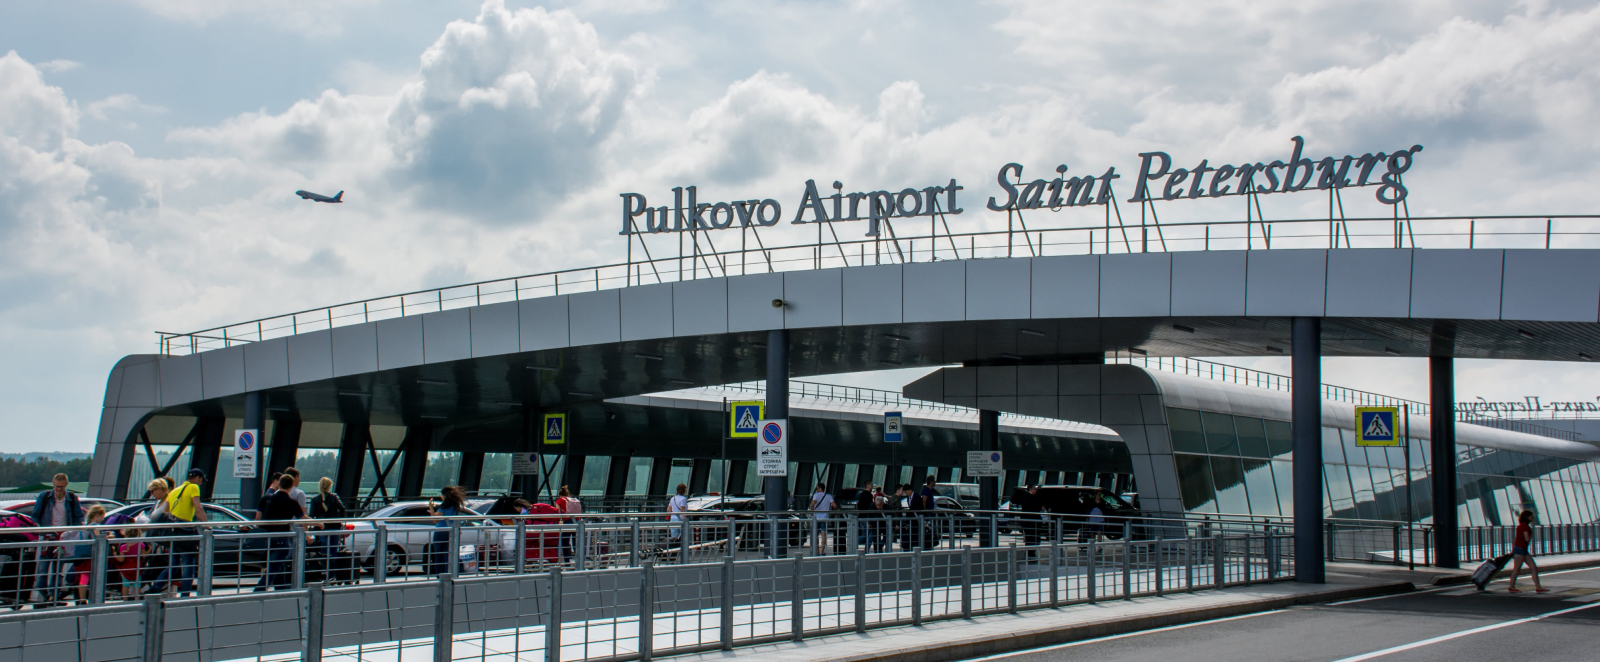 Pulkovo-Airport-Main-Terminal